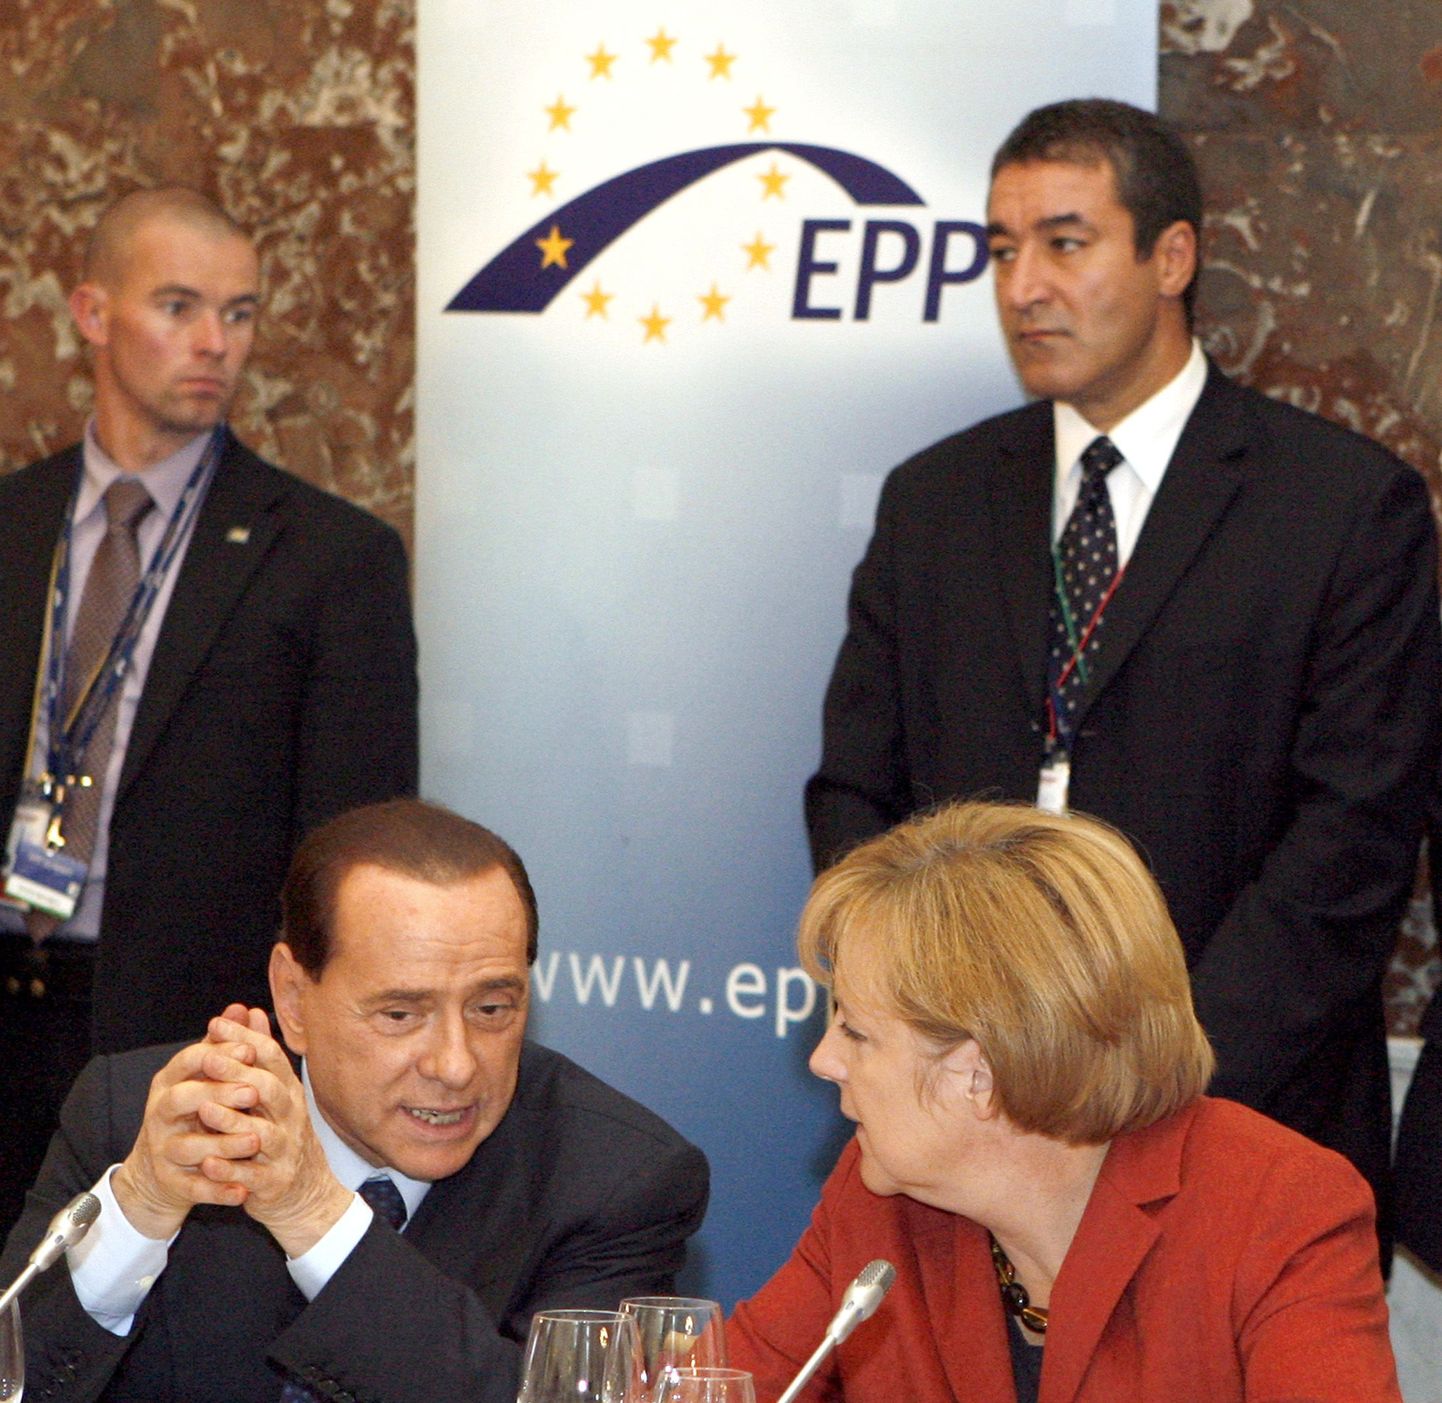 Itaalia peaminister Silvio Berlusconi ja Saksa kantsler Angela Merkel Euroopa Rahvapartei kohtumisel.